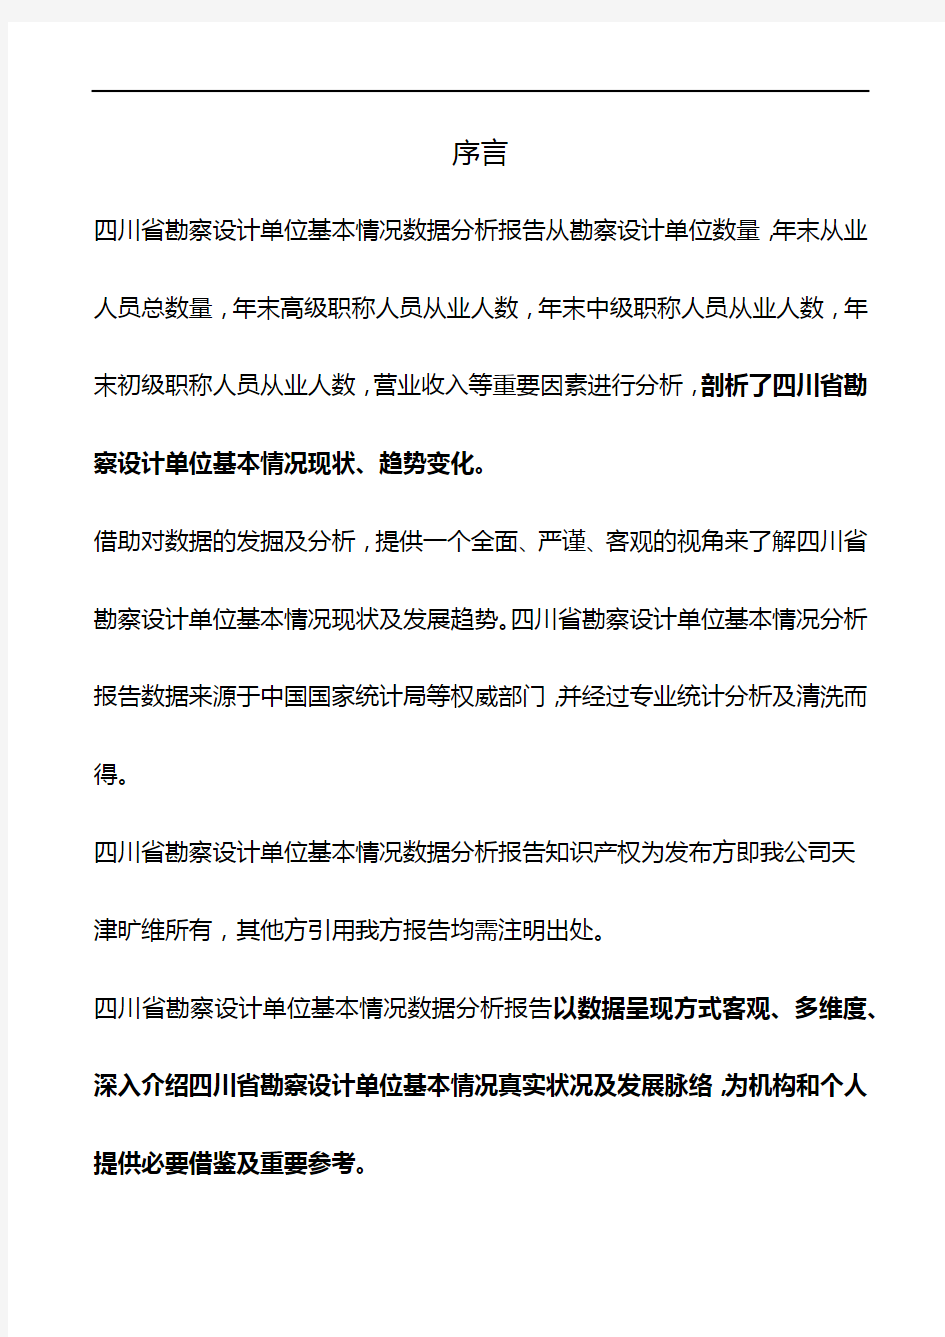 四川省勘察设计单位基本情况数据分析报告2019版